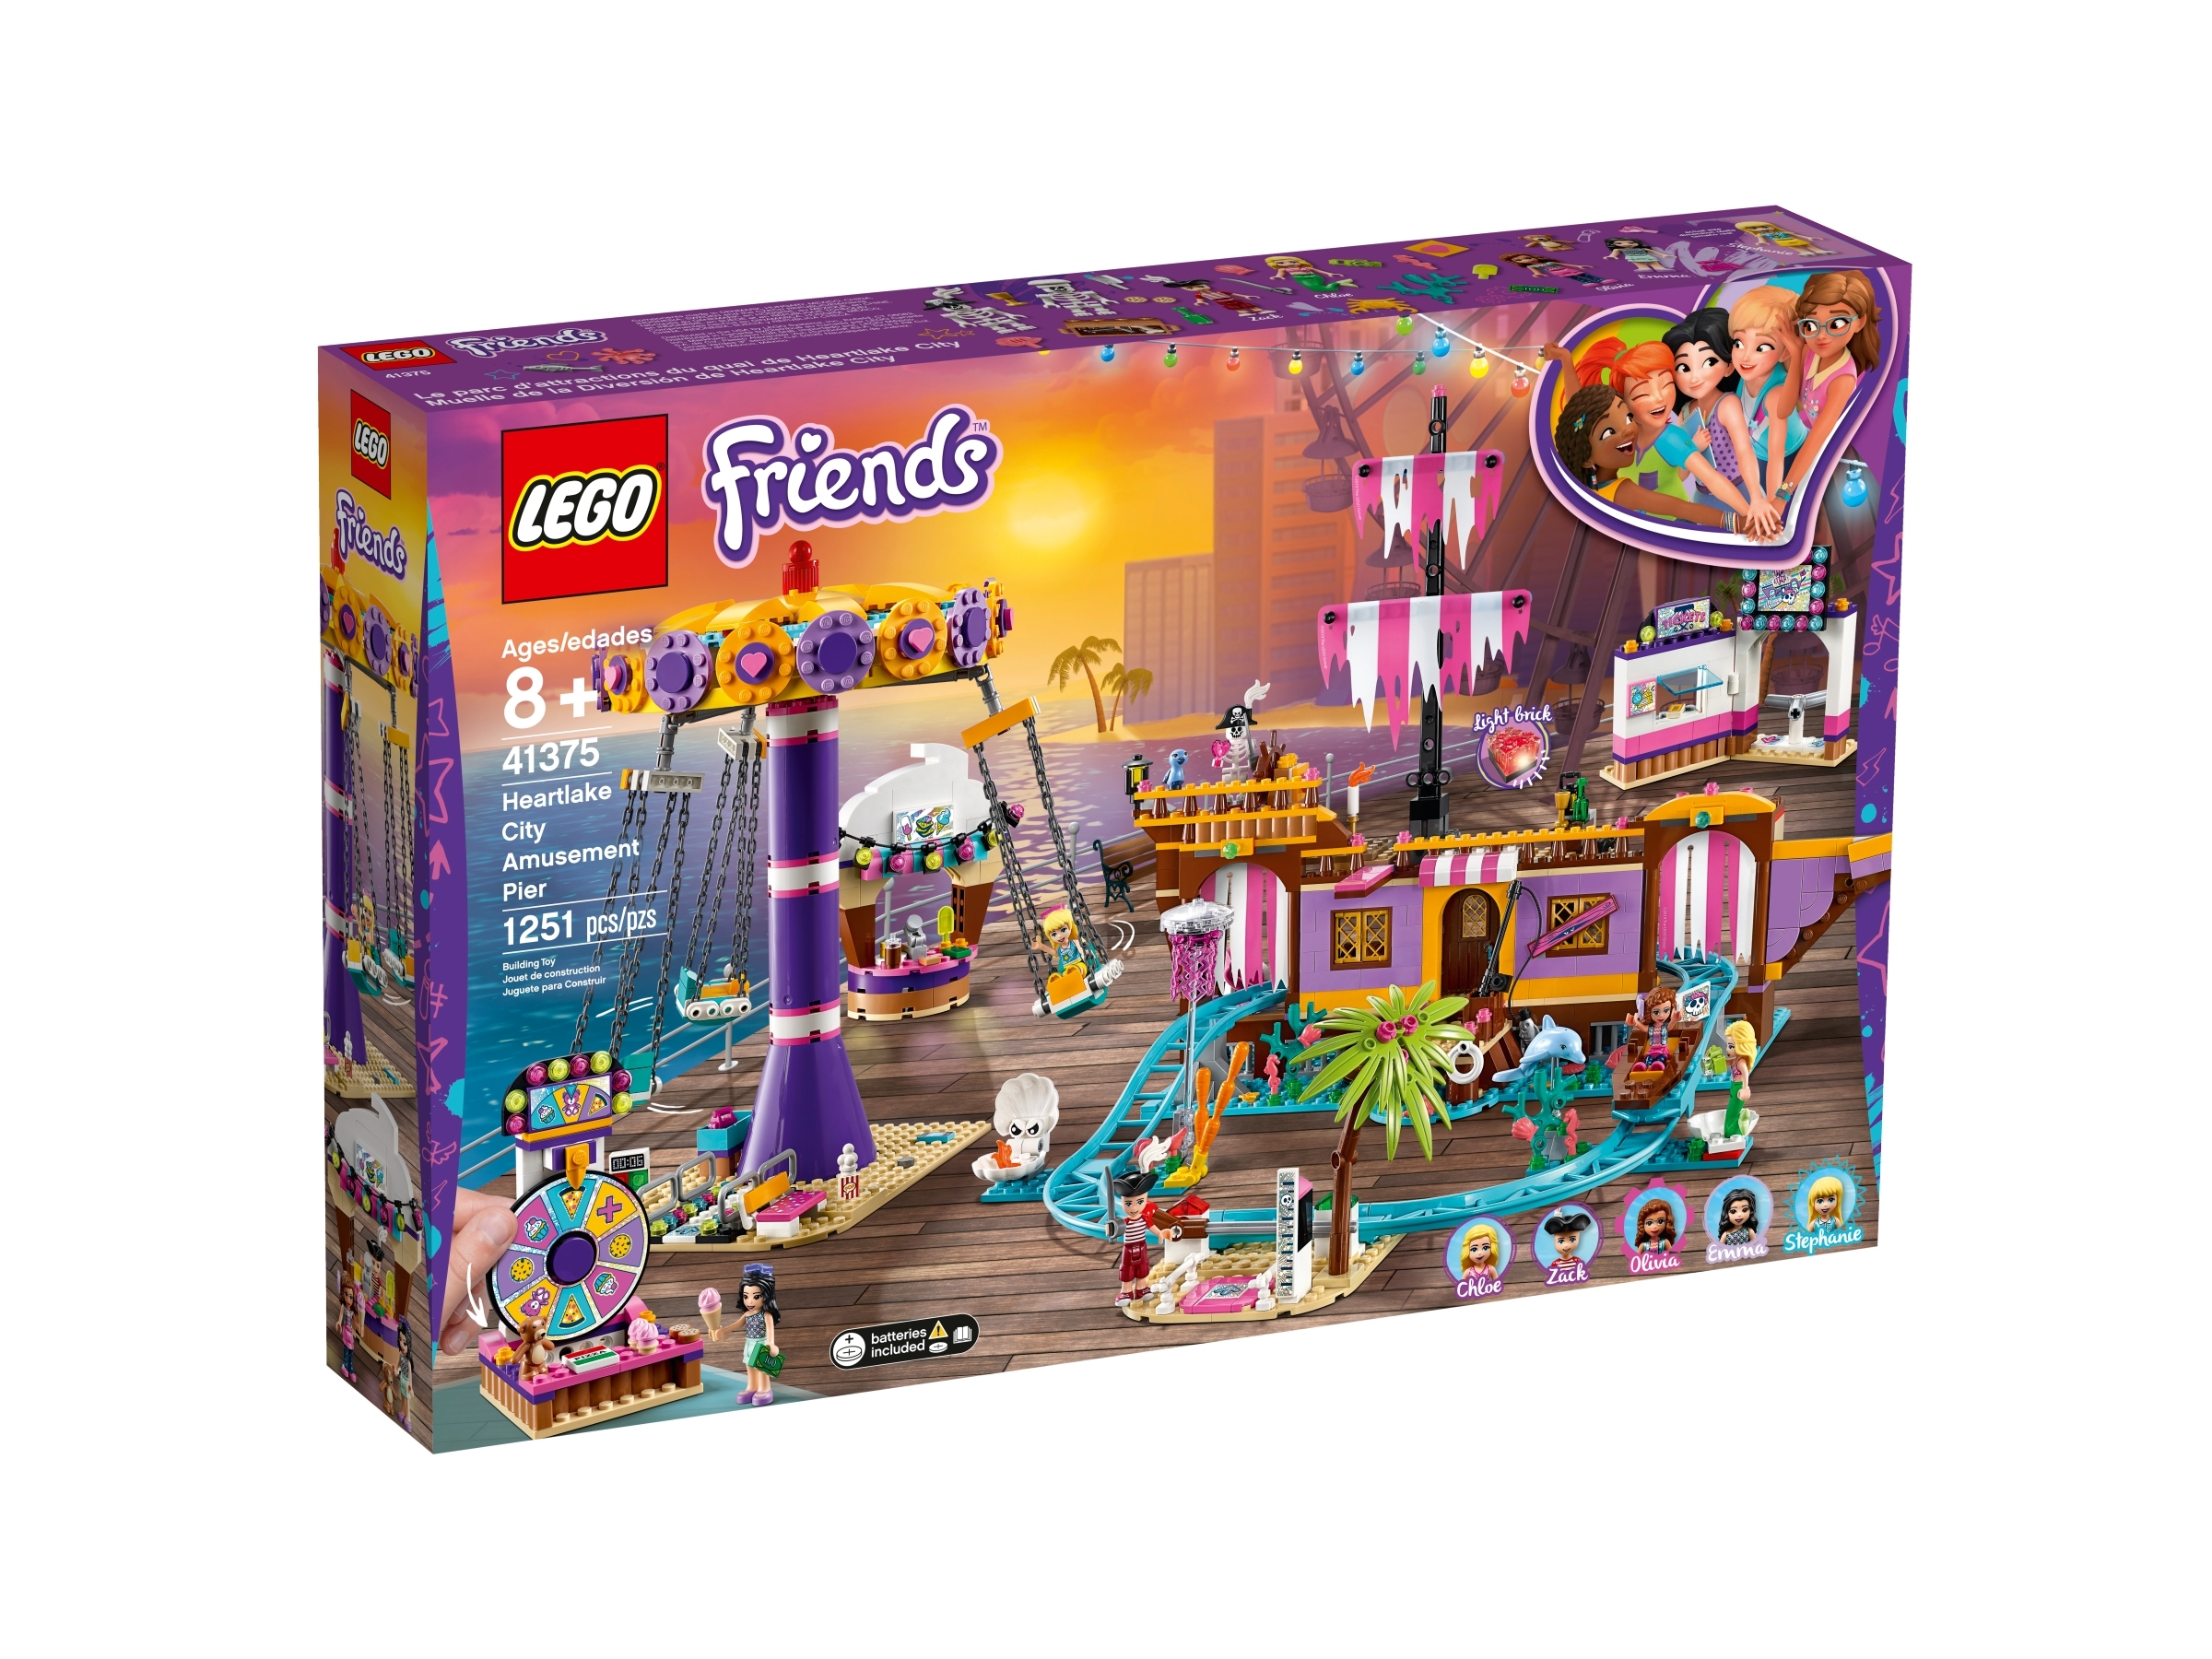 Heartlake City Amusement Pier 41375 | Friends | online at the Official LEGO® Shop US